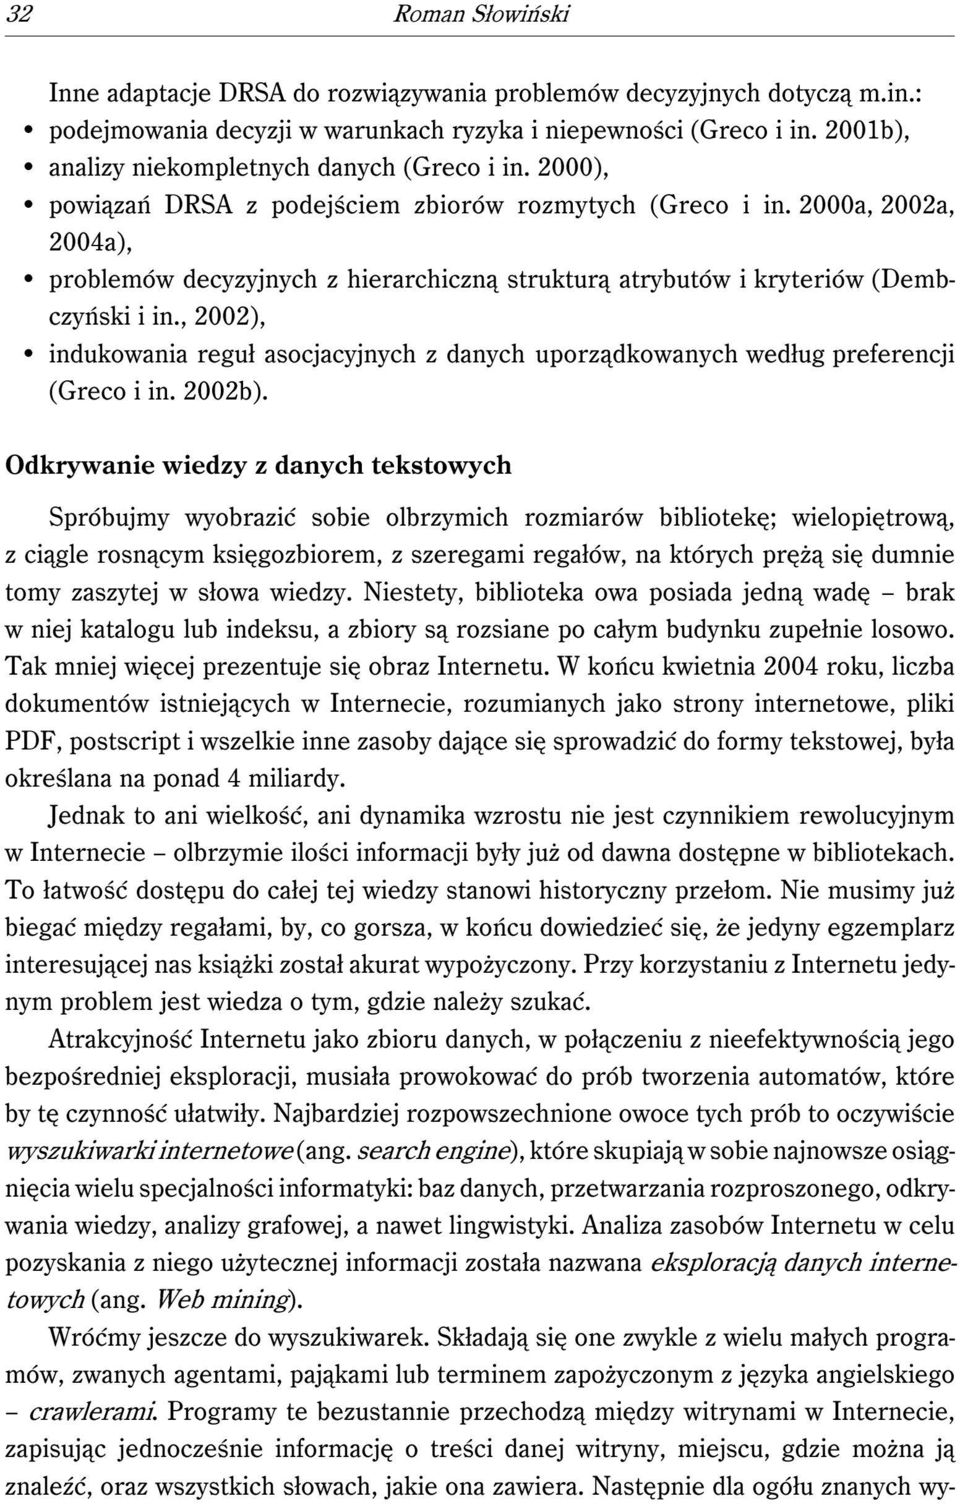 2000a, 2002a, 2004a), problemów decyzyjnych z hierarchiczną strukturą atrybutów i kryteriów (Dembczyński i in.